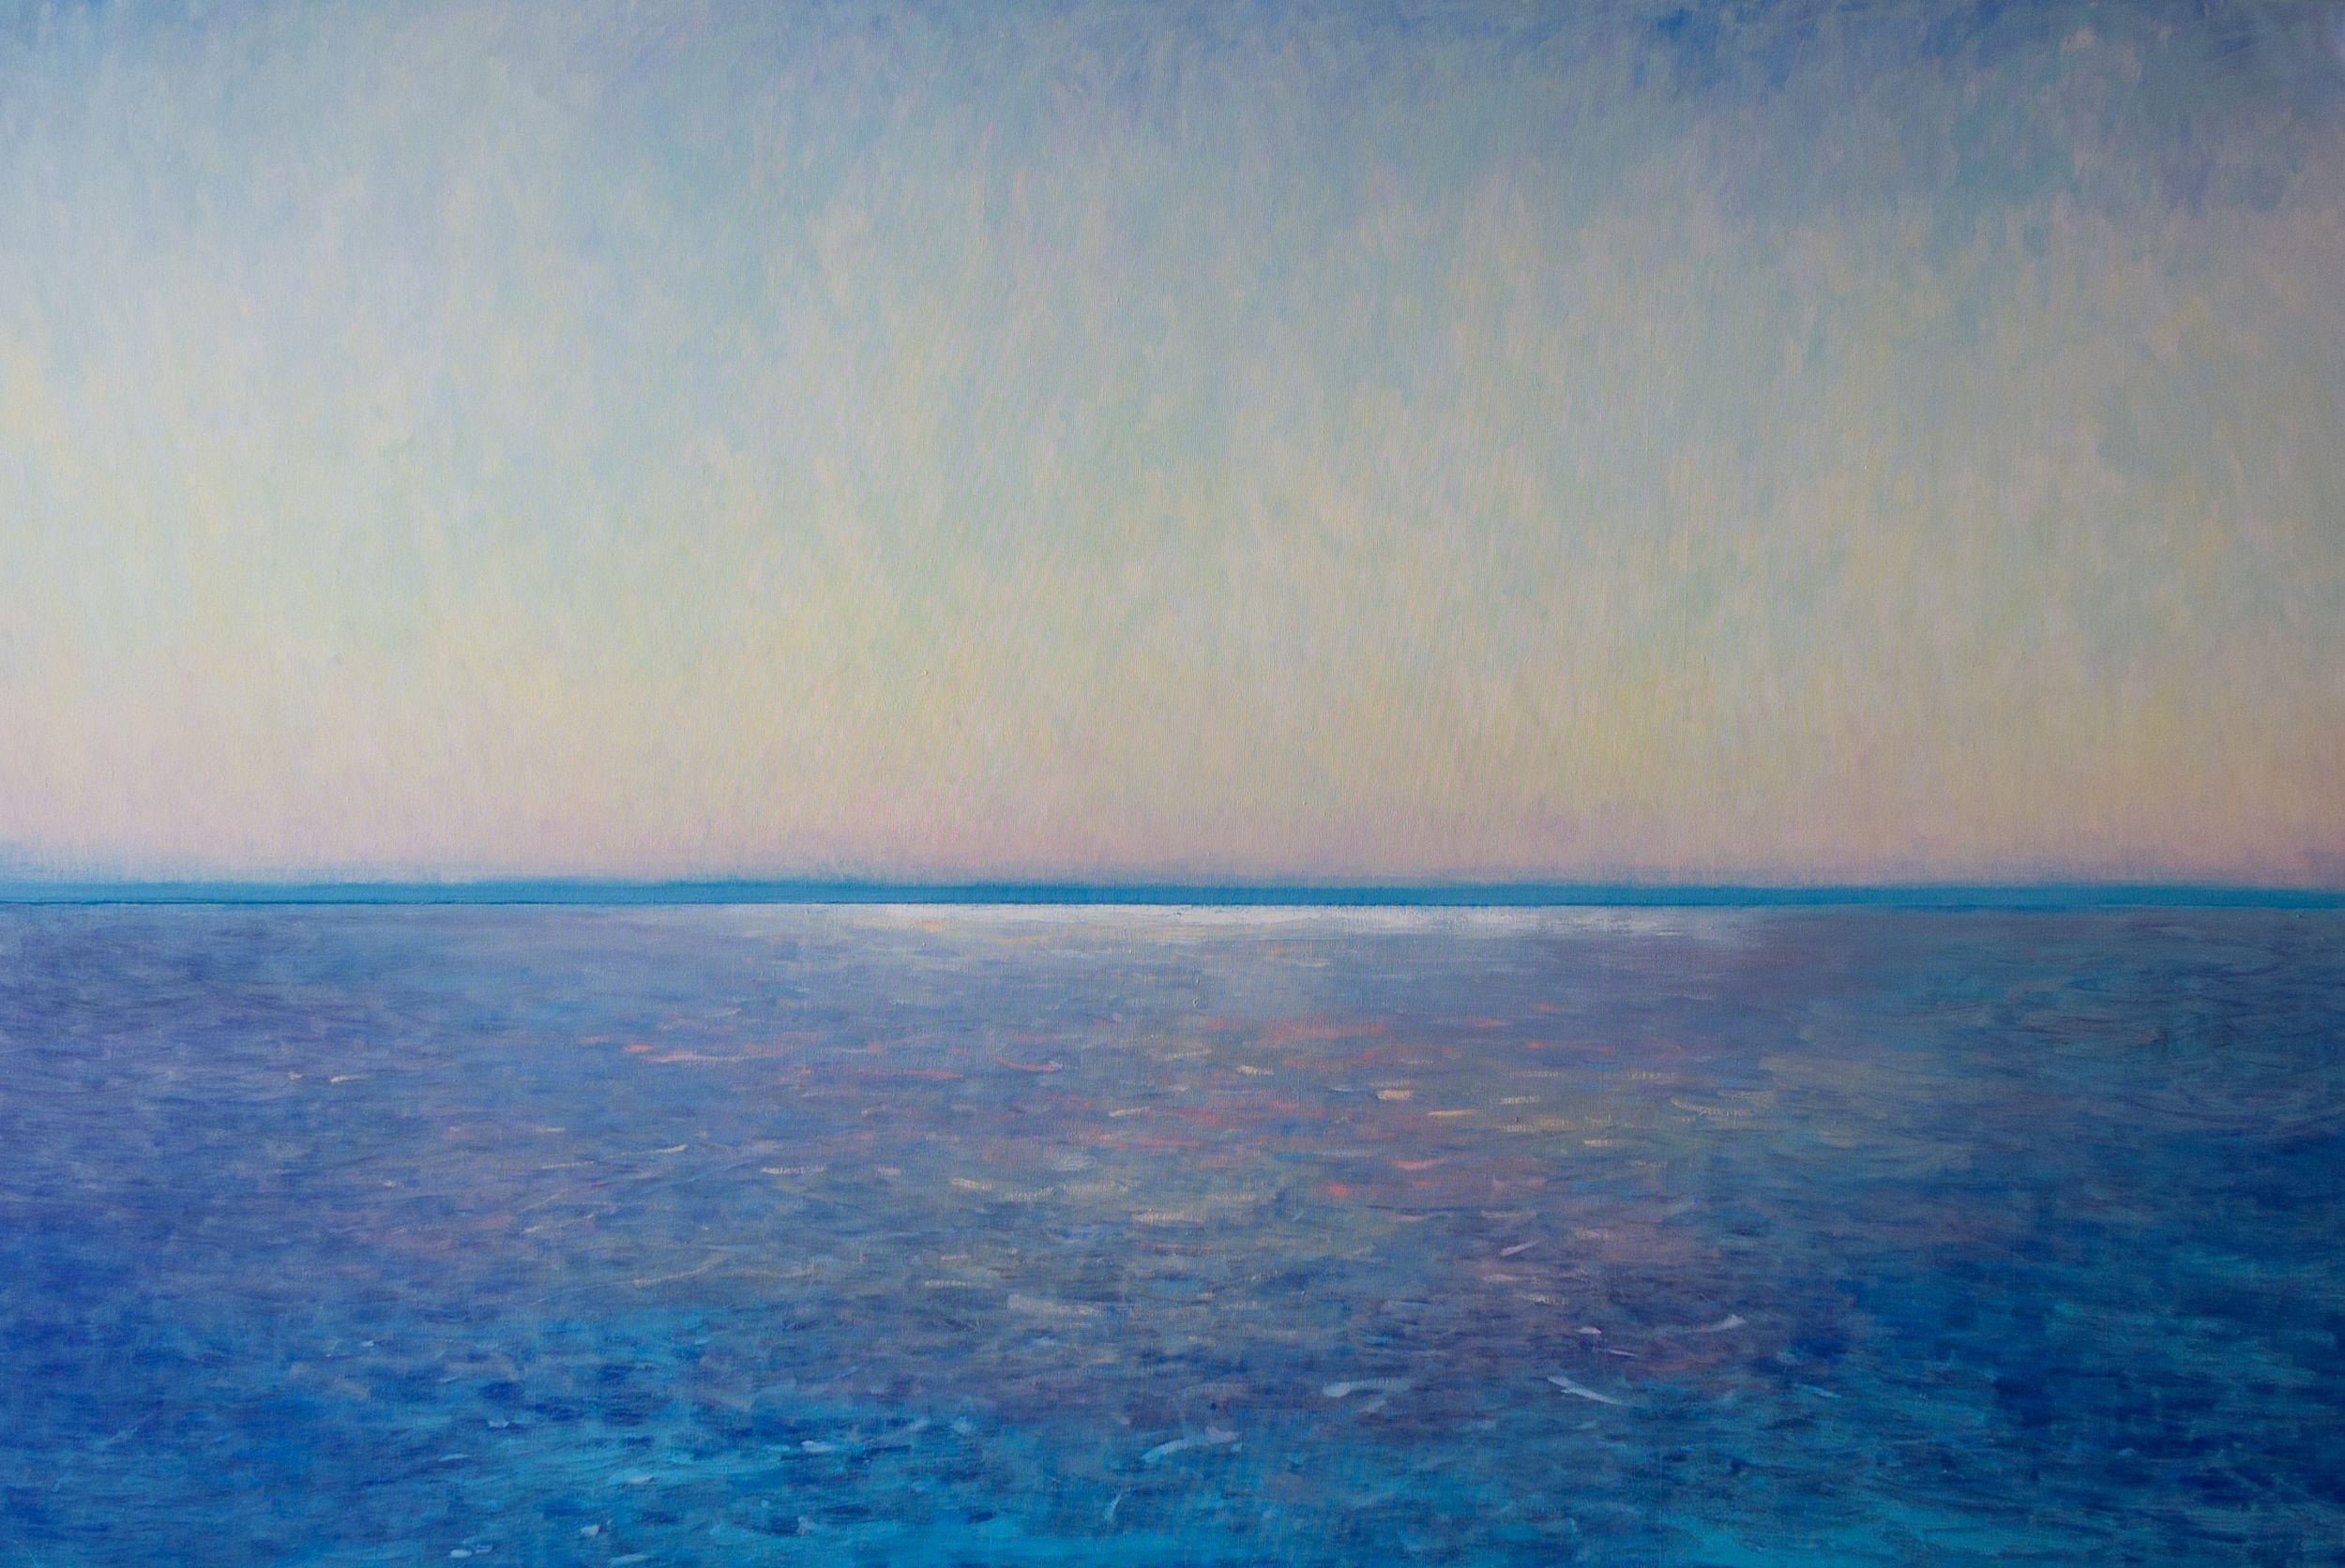 Horizon, Soirée, Peinture, Huile sur Toile - Painting de luca raimondi